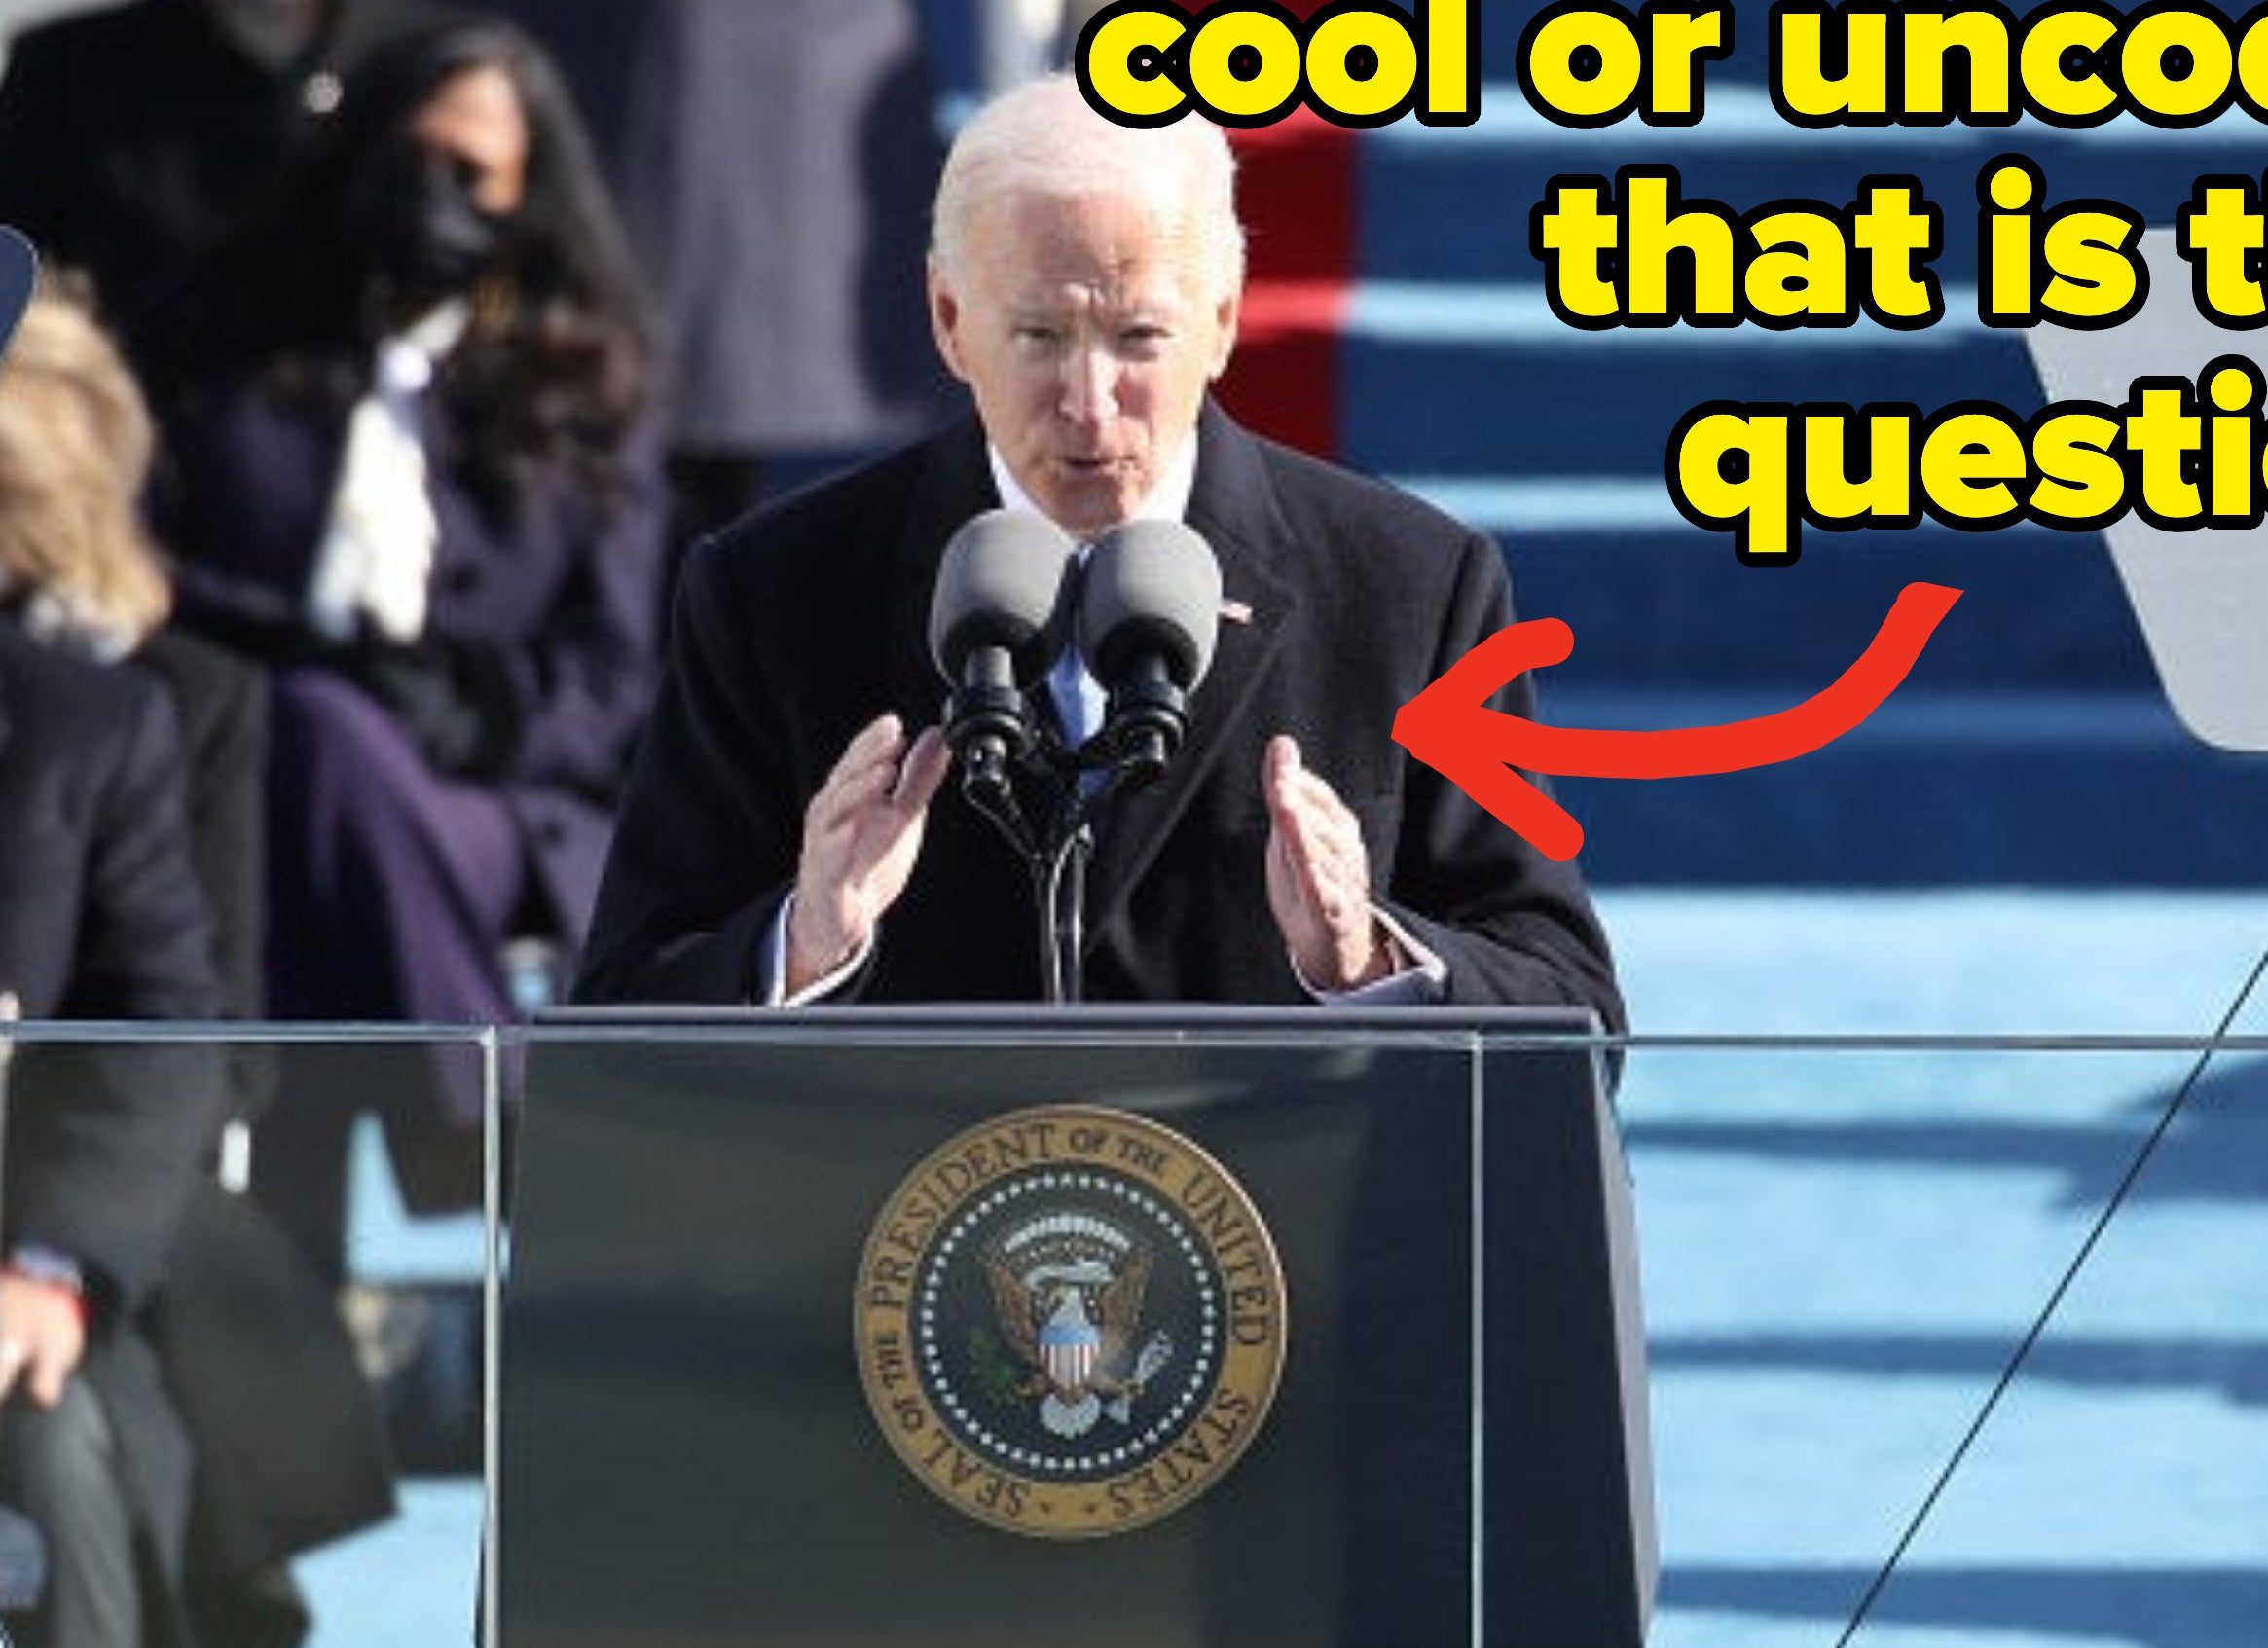 华盛顿特区- 1月20日:美国总统拜登(Joe Biden)提供就职演说在美国国会大厦前1月20日,2021年在华盛顿特区